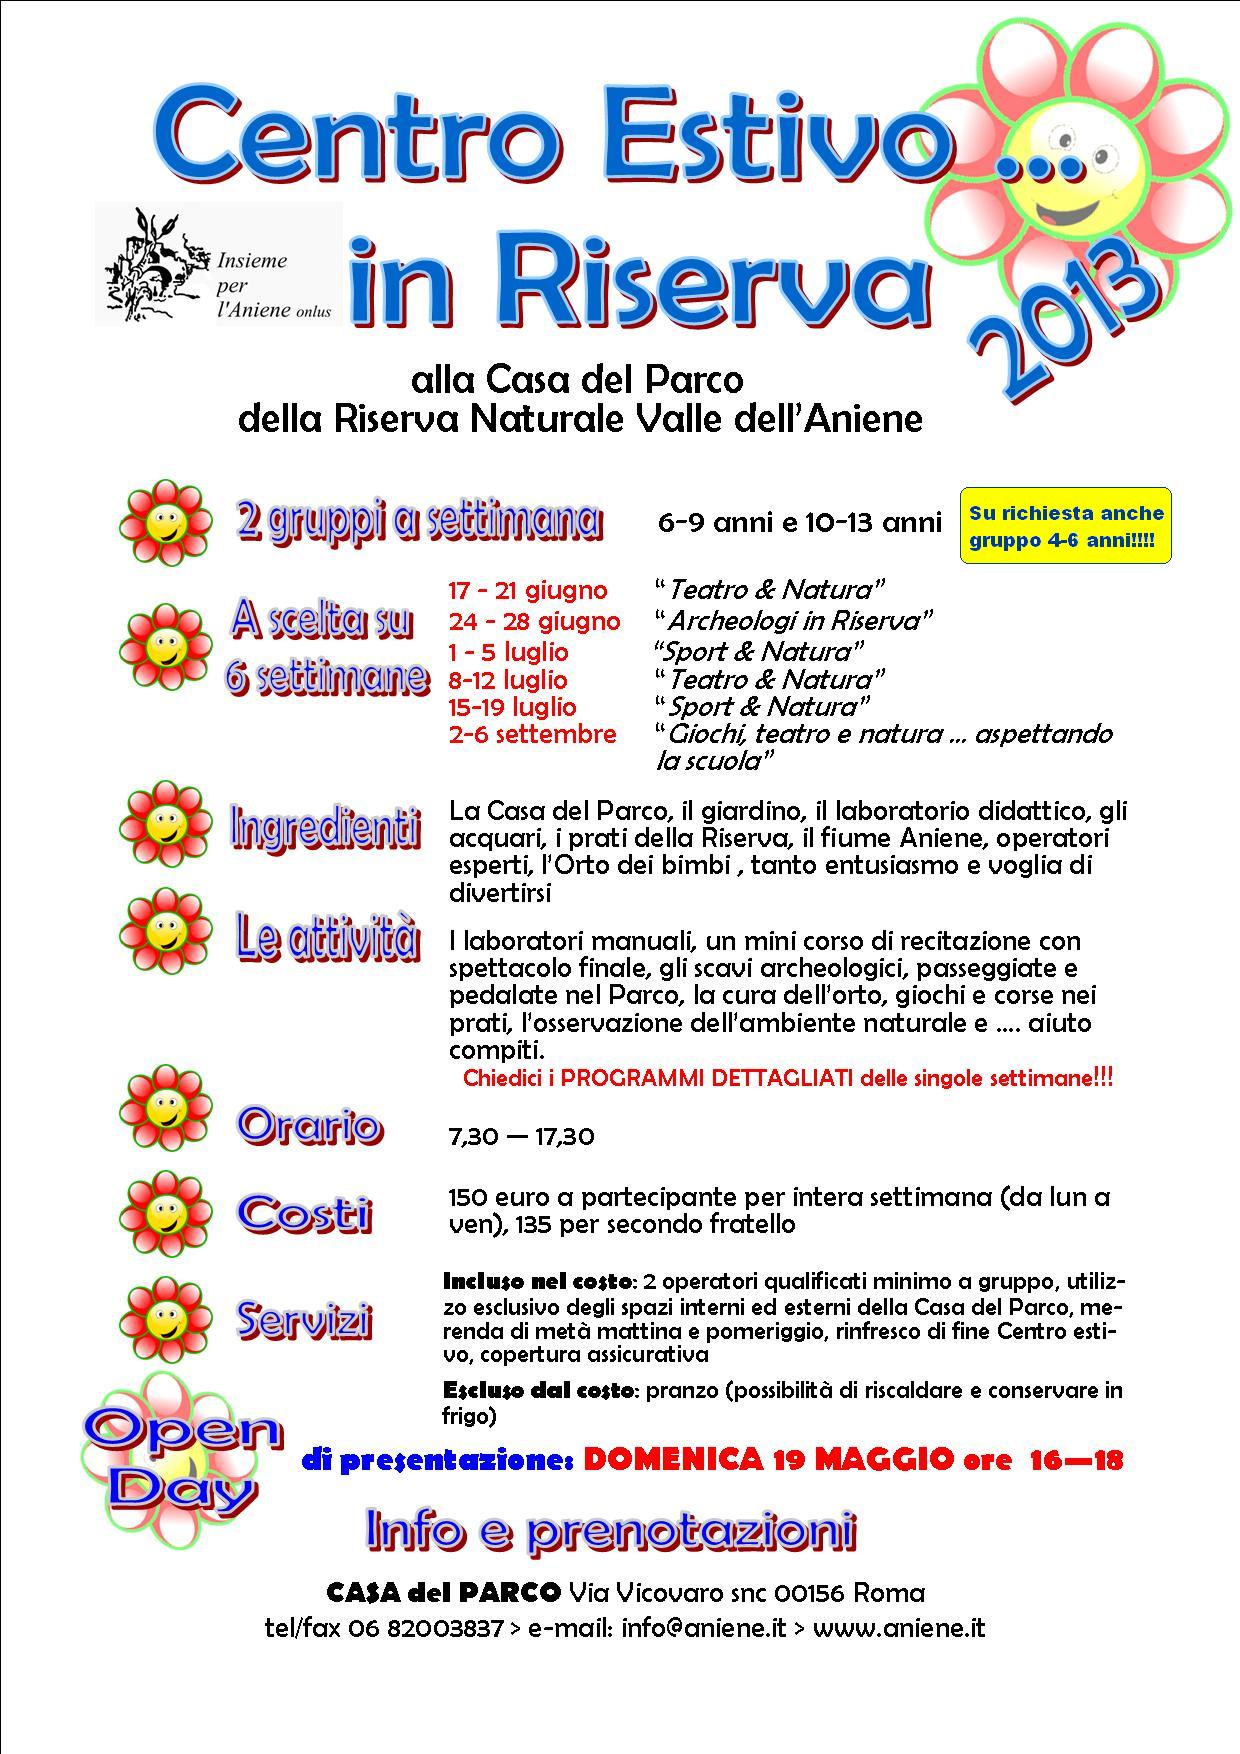 19 MAGGIO 2013-OPEN DAY "CENTRI ESTIVI IN RISERVA"